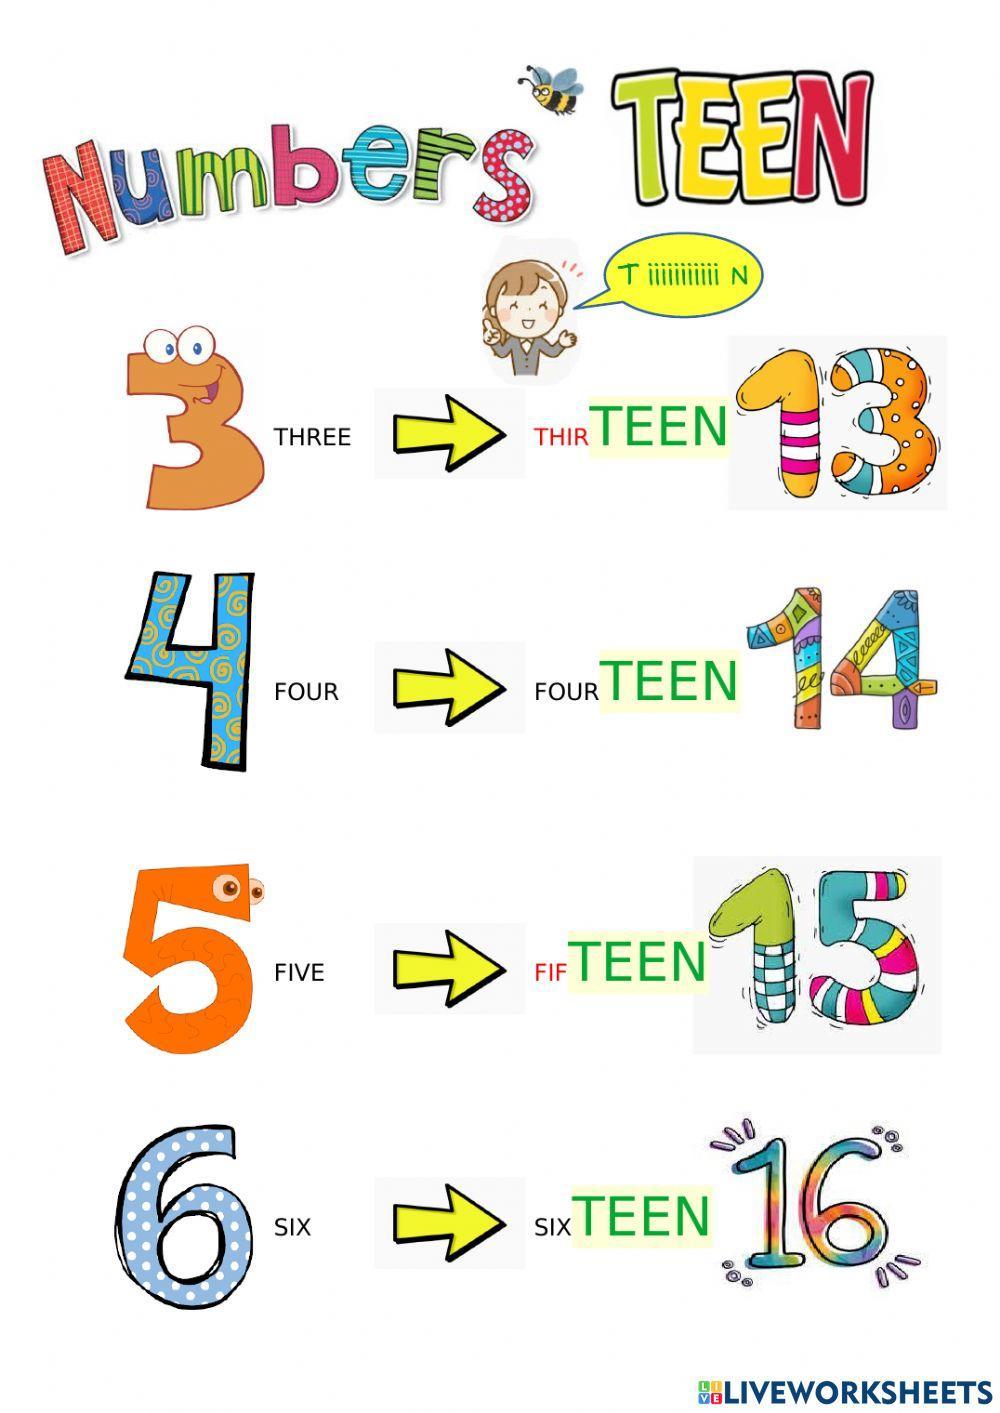 Teen numbers